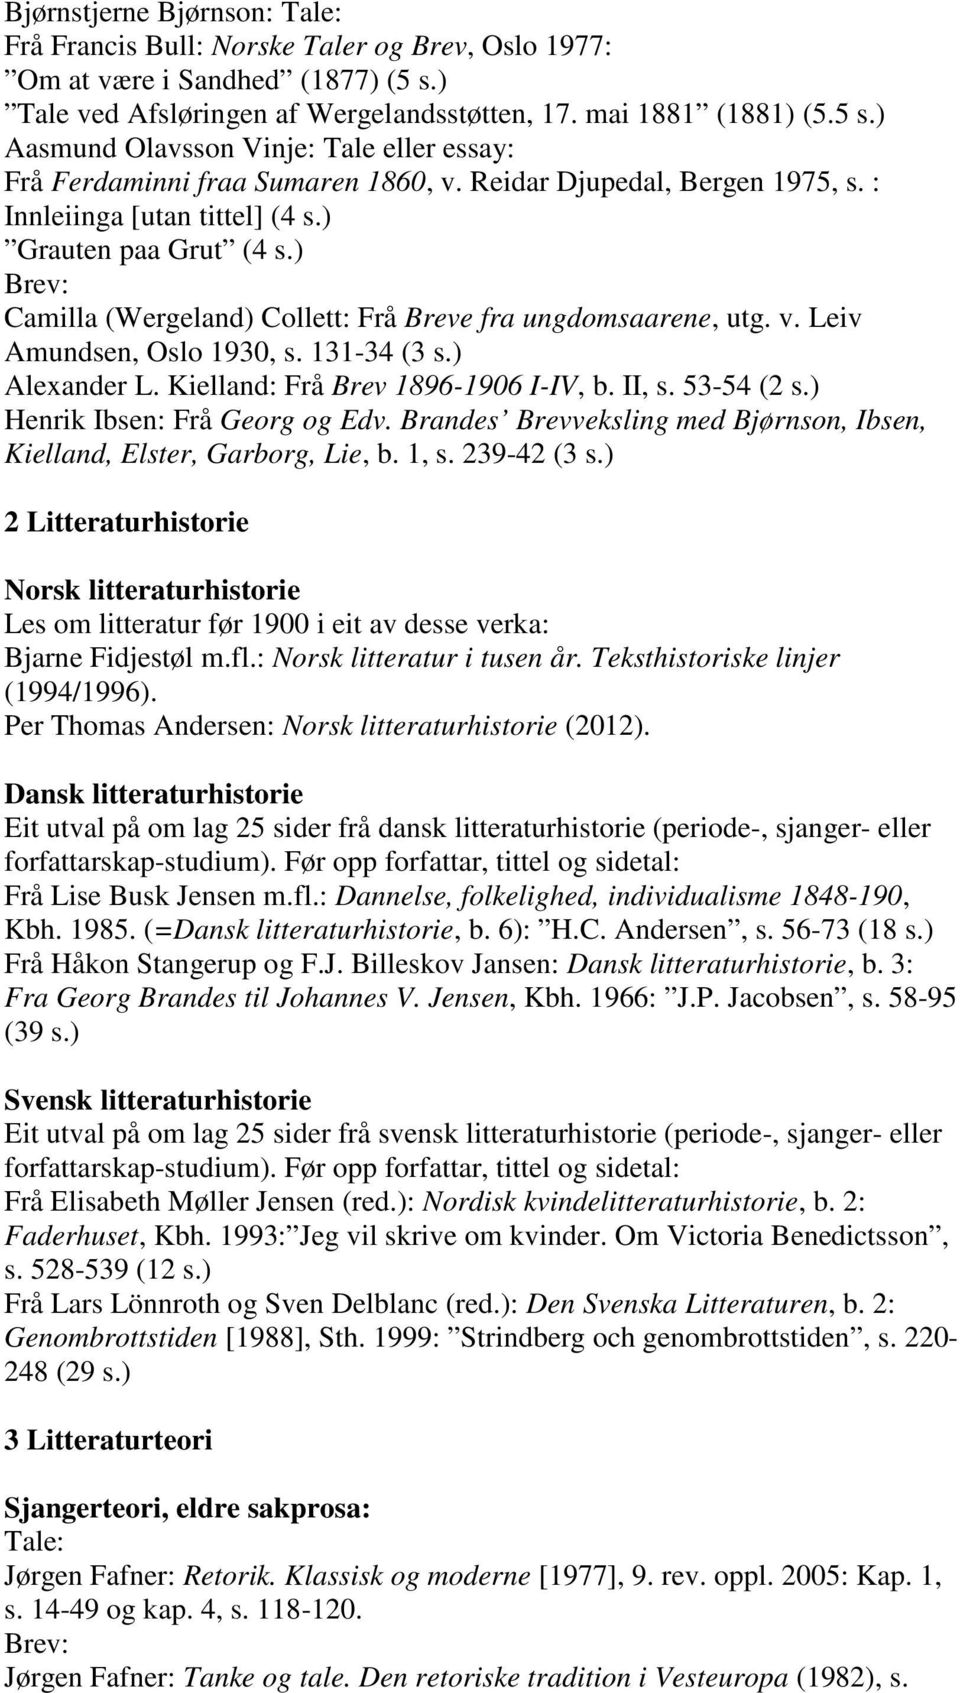 131-34 (3 s.) Alexander L. Kielland: Frå Brev 1896-1906 I-IV, b. II, s. 53-54 (2 s.) Henrik Ibsen: Frå Georg og Edv. Brandes Brevveksling med Bjørnson, Ibsen, Kielland, Elster, Garborg, Lie, b. 1, s.